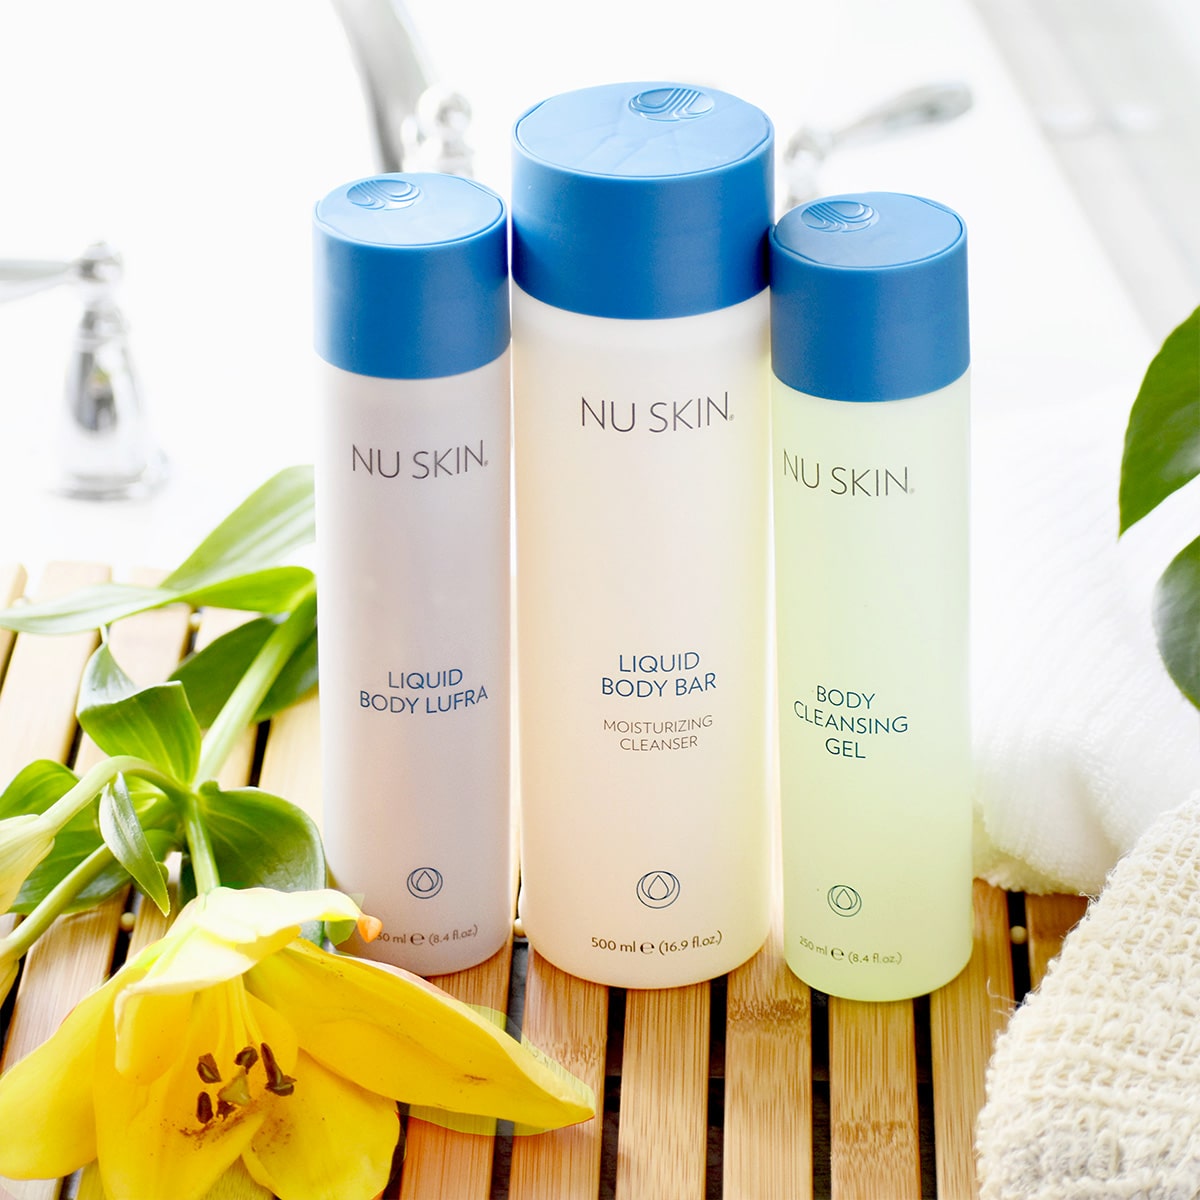 Mehrere NuSkin Basic Produkte zur Körperpflege (darunter Liquid Body Lufra) stehen in sanitärer Umgebung auf einer kleinen Holzmatte.